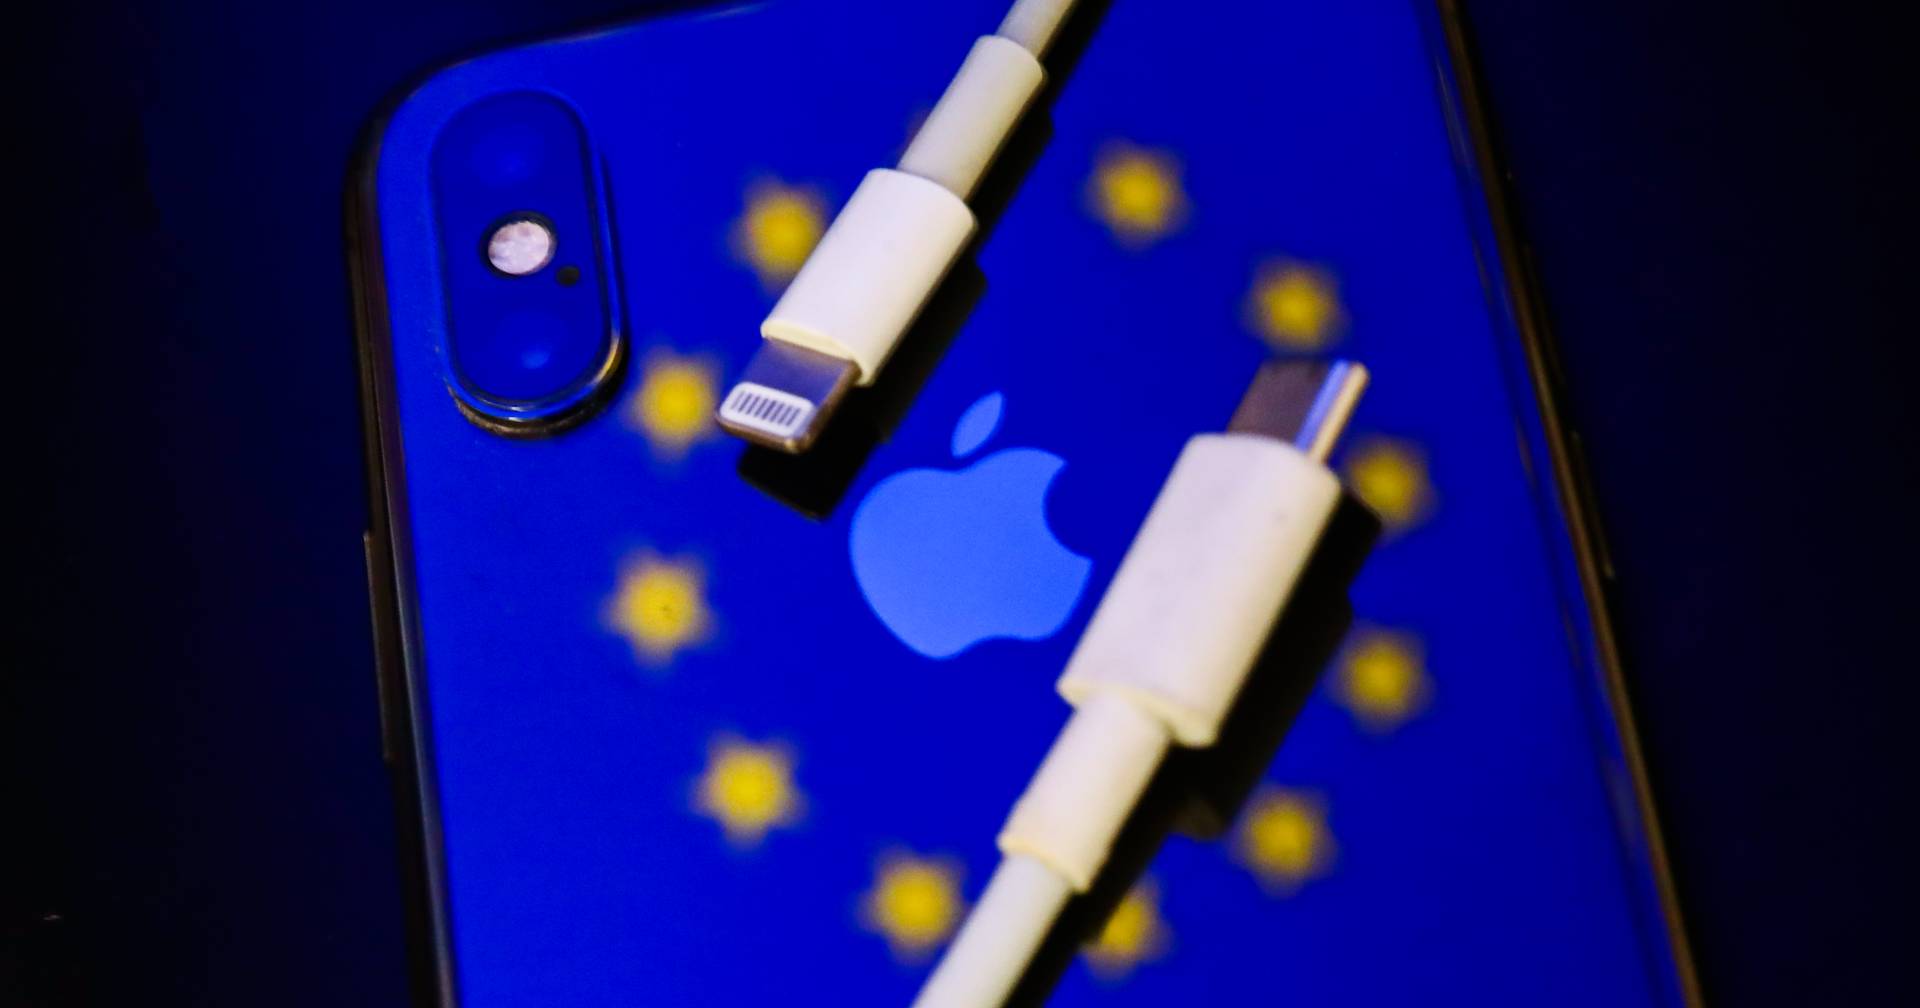 UE terá carregador único para telemóveis e tablets em 2024. Saiba o que vai mudar